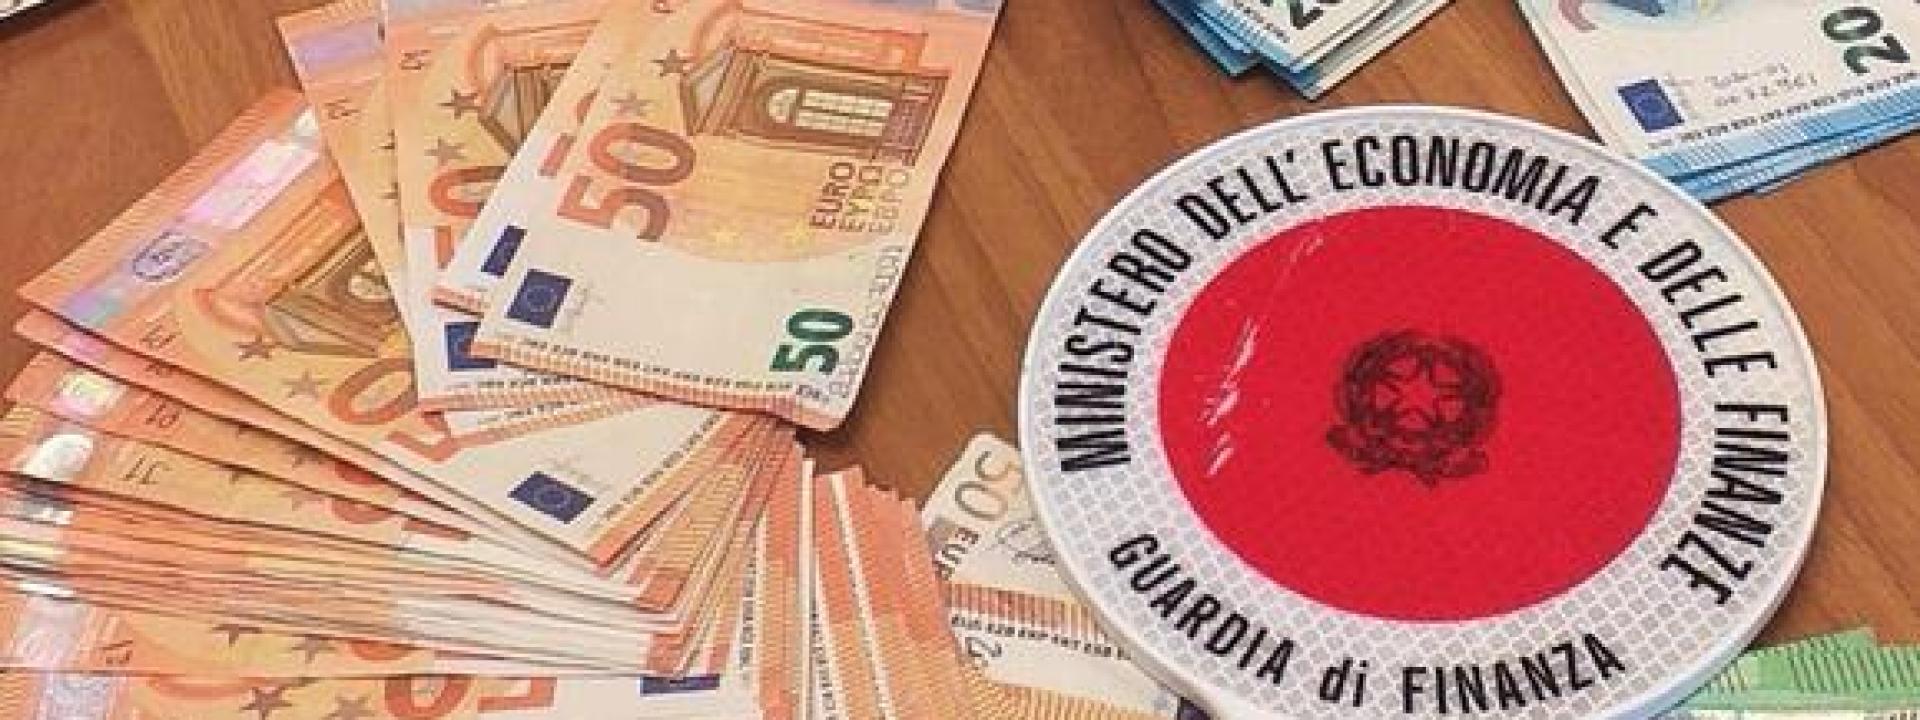 Marche - Fanno la spesa con banconote da 500 euro false fatte in Medio Oriente: tre denunce